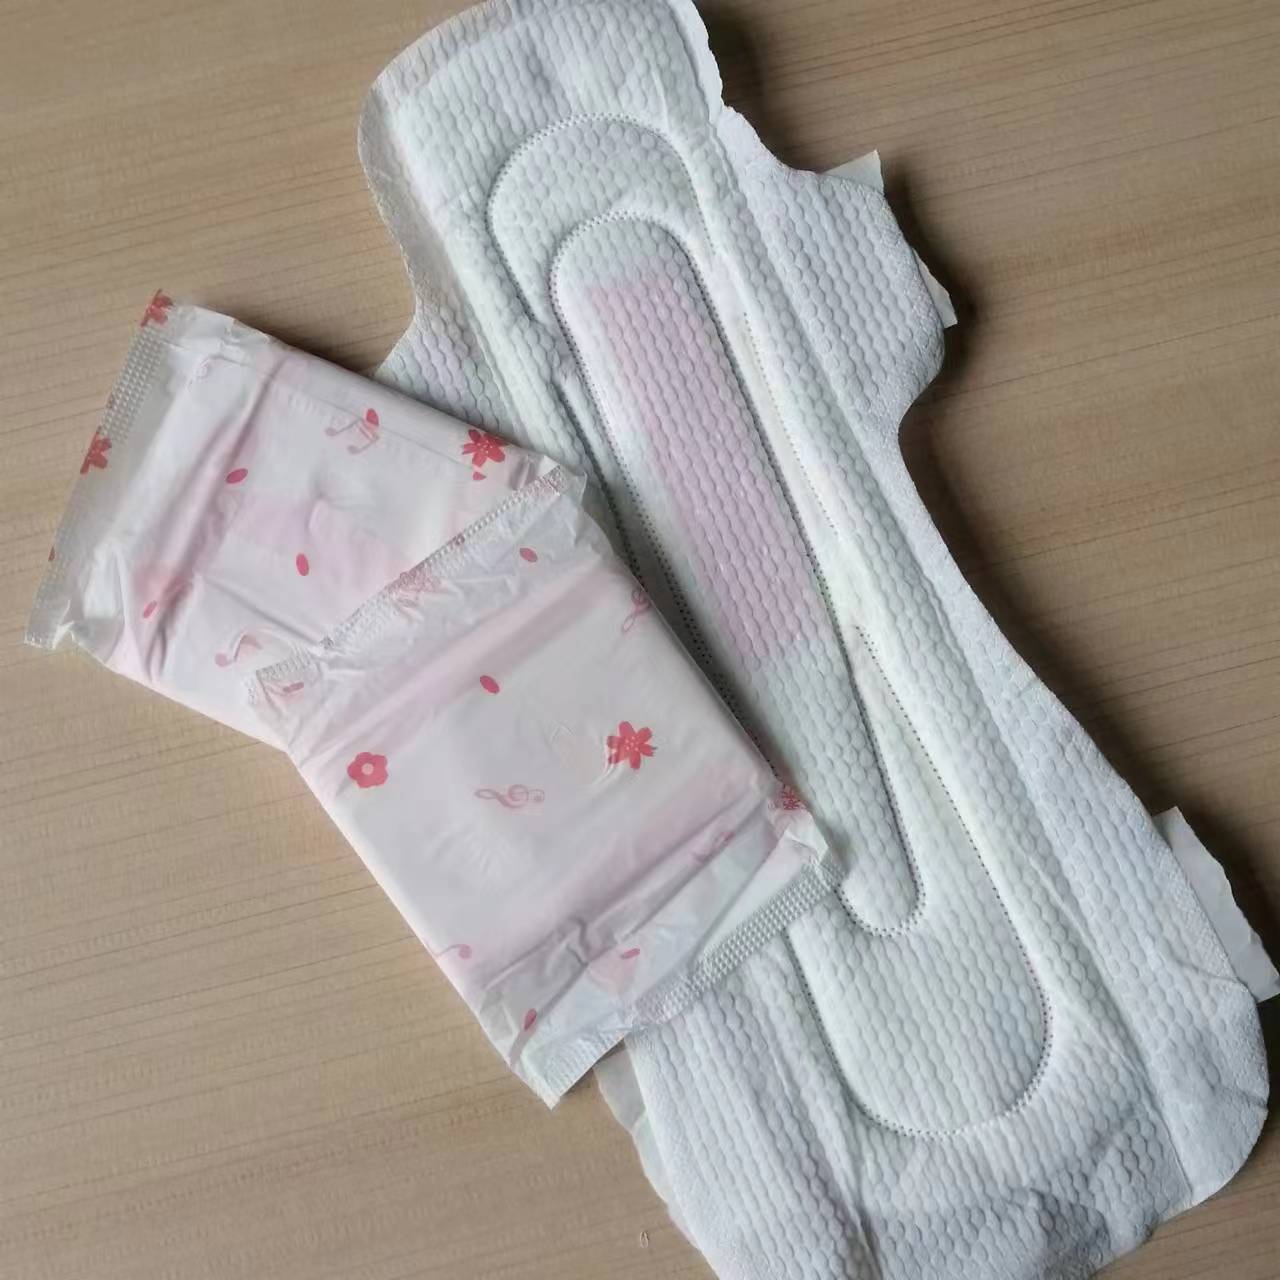 Meilleure qualité serviettes hygiéniques femmes serviettes menstruelles féminines ailes Style période serviettes hygiéniques serviettes hygiéniques super douces